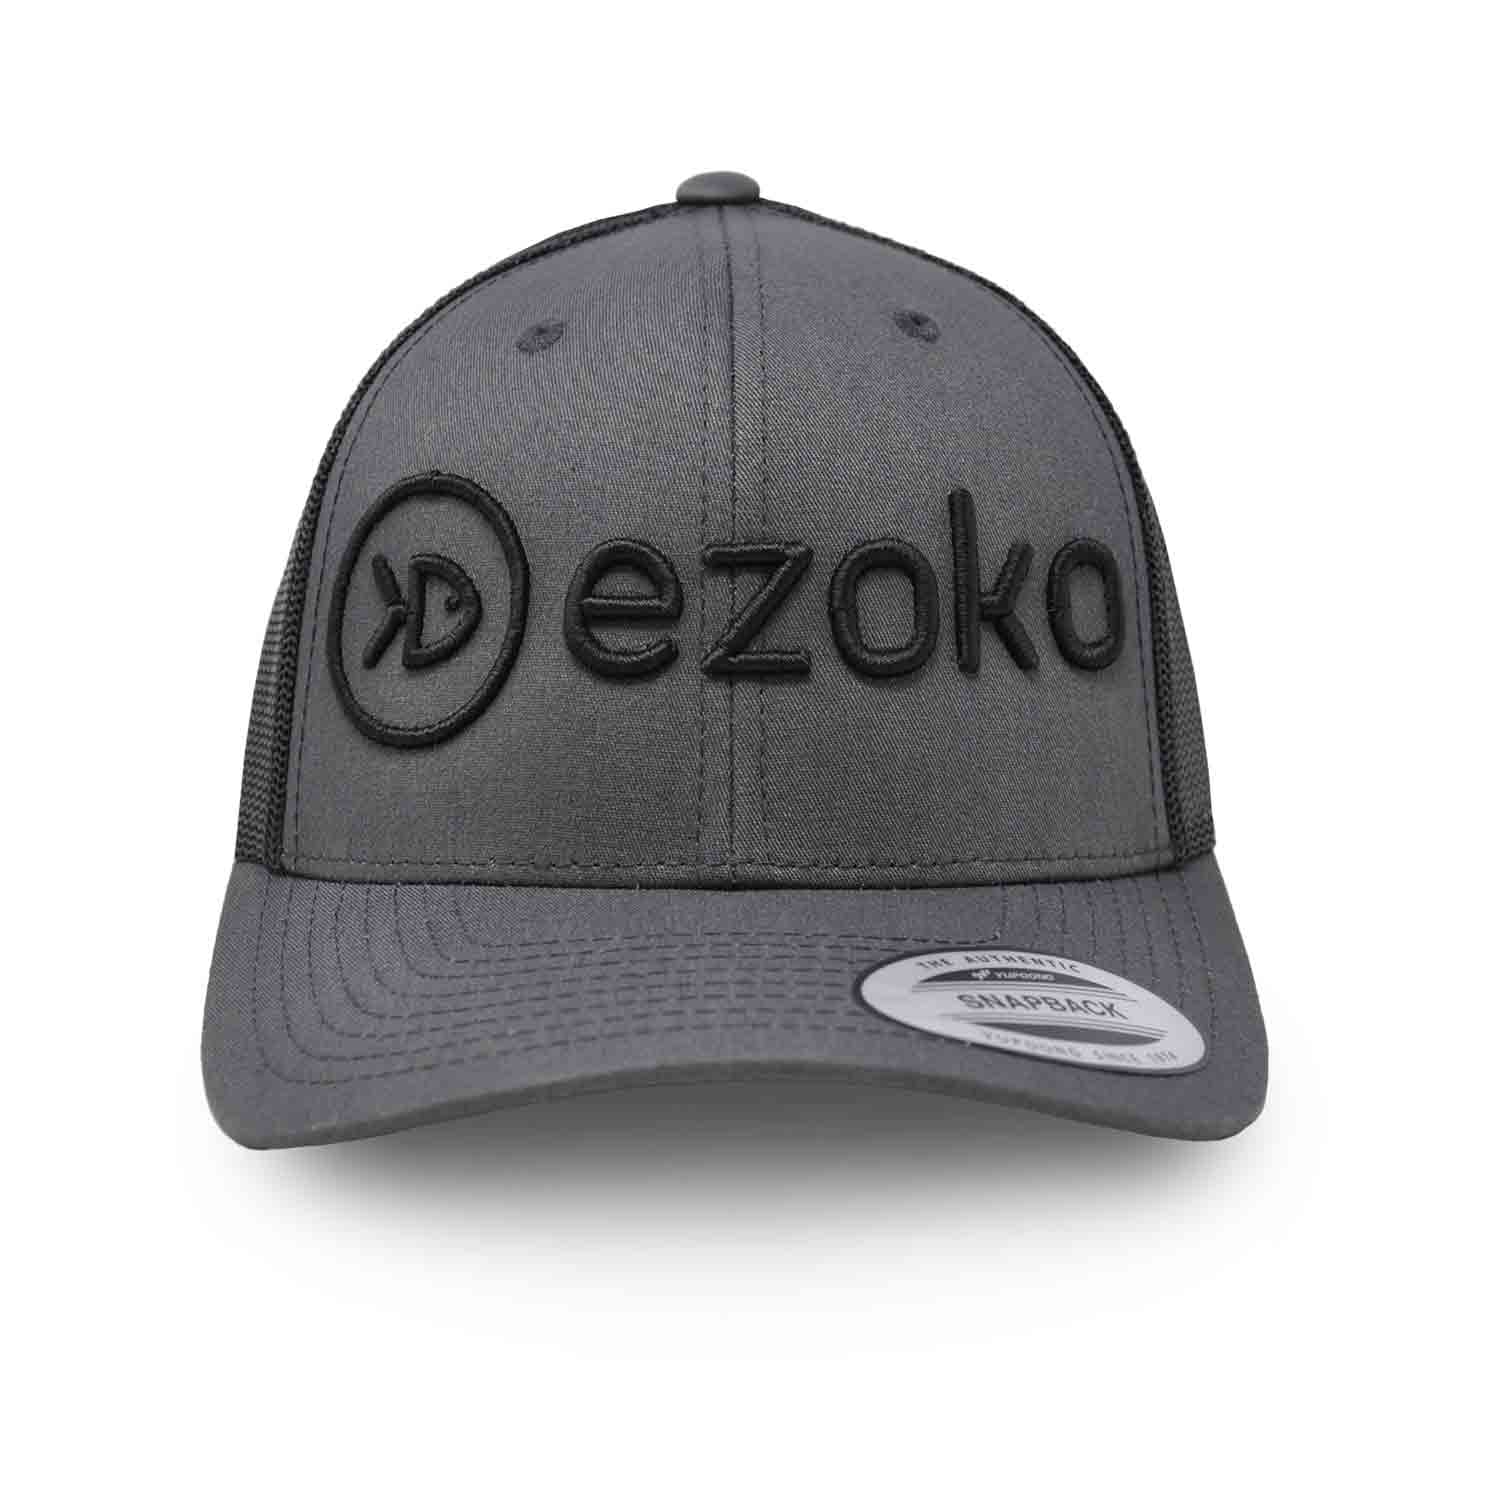 Ezoko Classics YUPOONG Retro Trucker cap Charcoal / Black 3D-Puff Black Hats